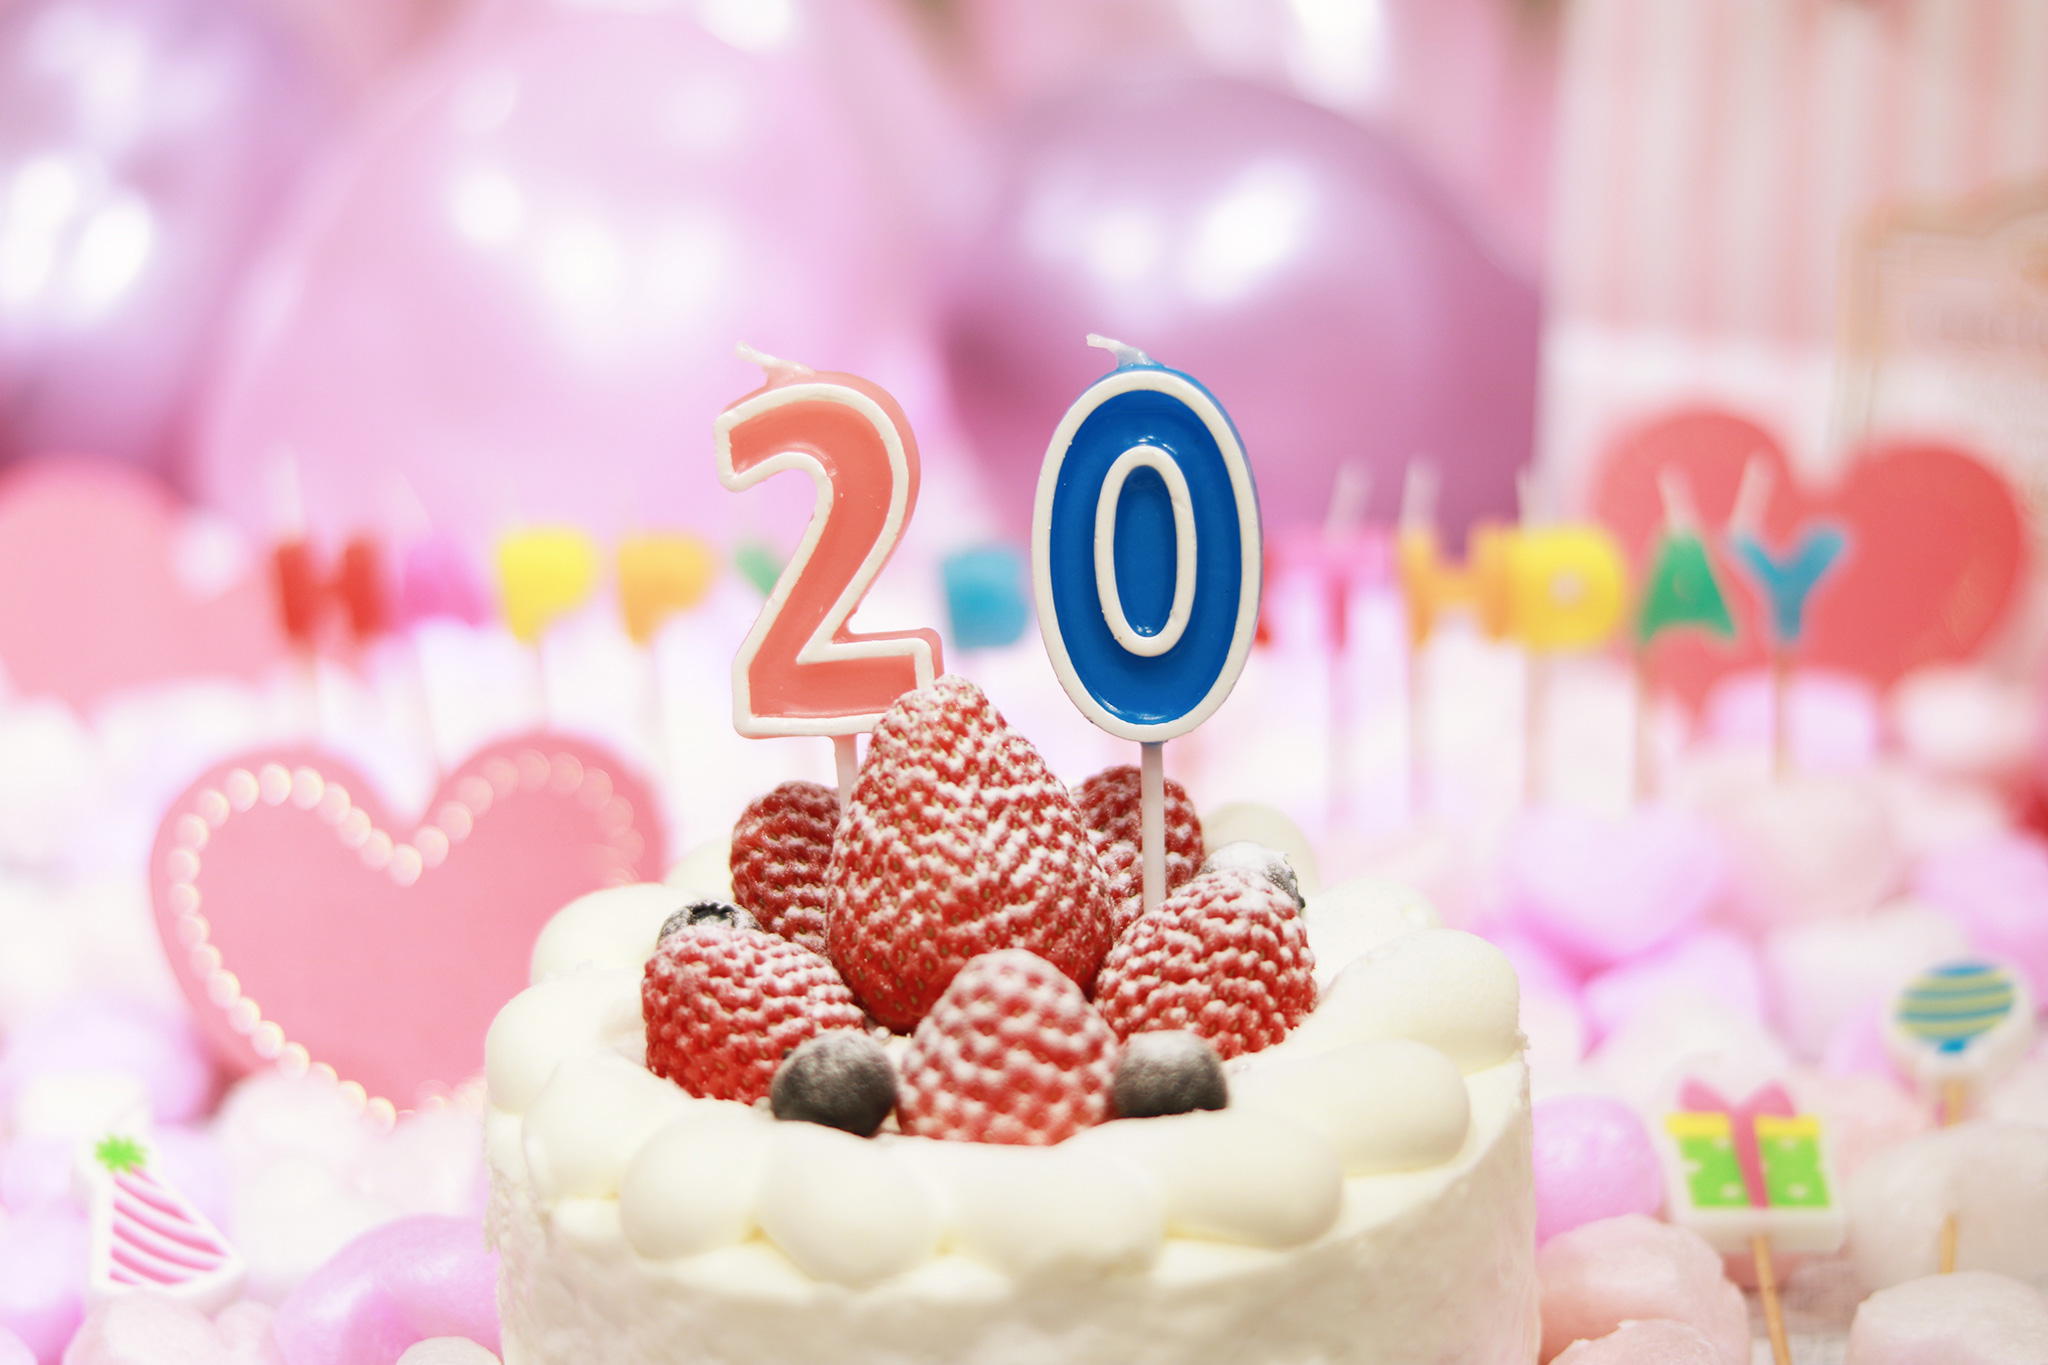 オシャレな誕生日画像 可愛いケーキとキャンドルでお祝い 20歳編 のフリー画像 おしゃれなフリー写真素材 Girly Drop